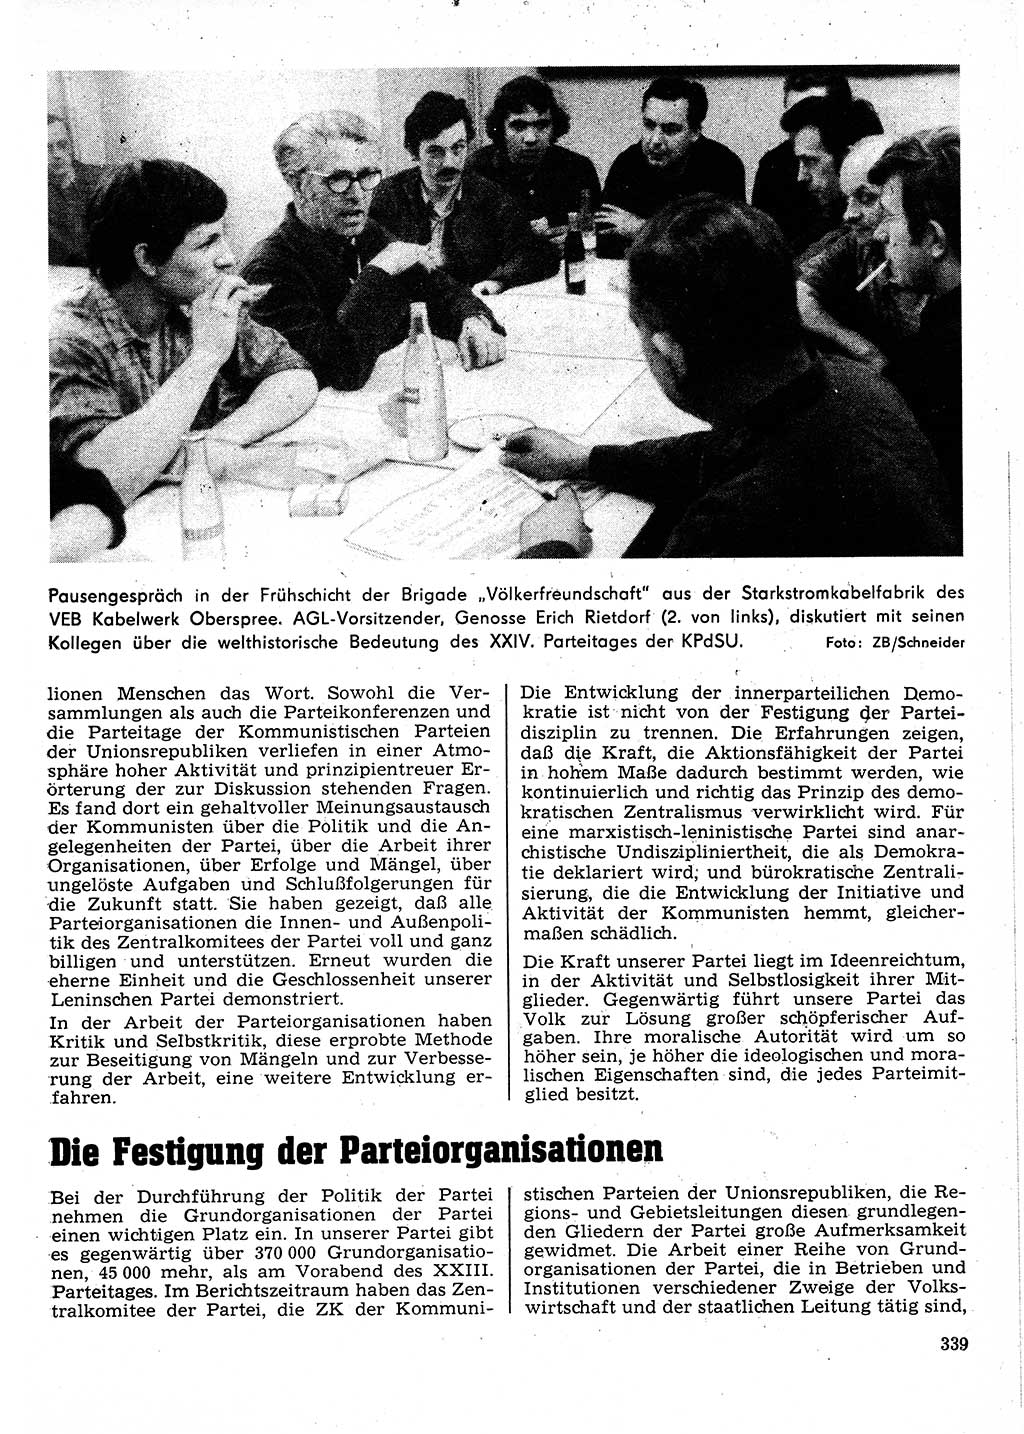 Neuer Weg (NW), Organ des Zentralkomitees (ZK) der SED (Sozialistische Einheitspartei Deutschlands) für Fragen des Parteilebens, 26. Jahrgang [Deutsche Demokratische Republik (DDR)] 1971, Seite 339 (NW ZK SED DDR 1971, S. 339)